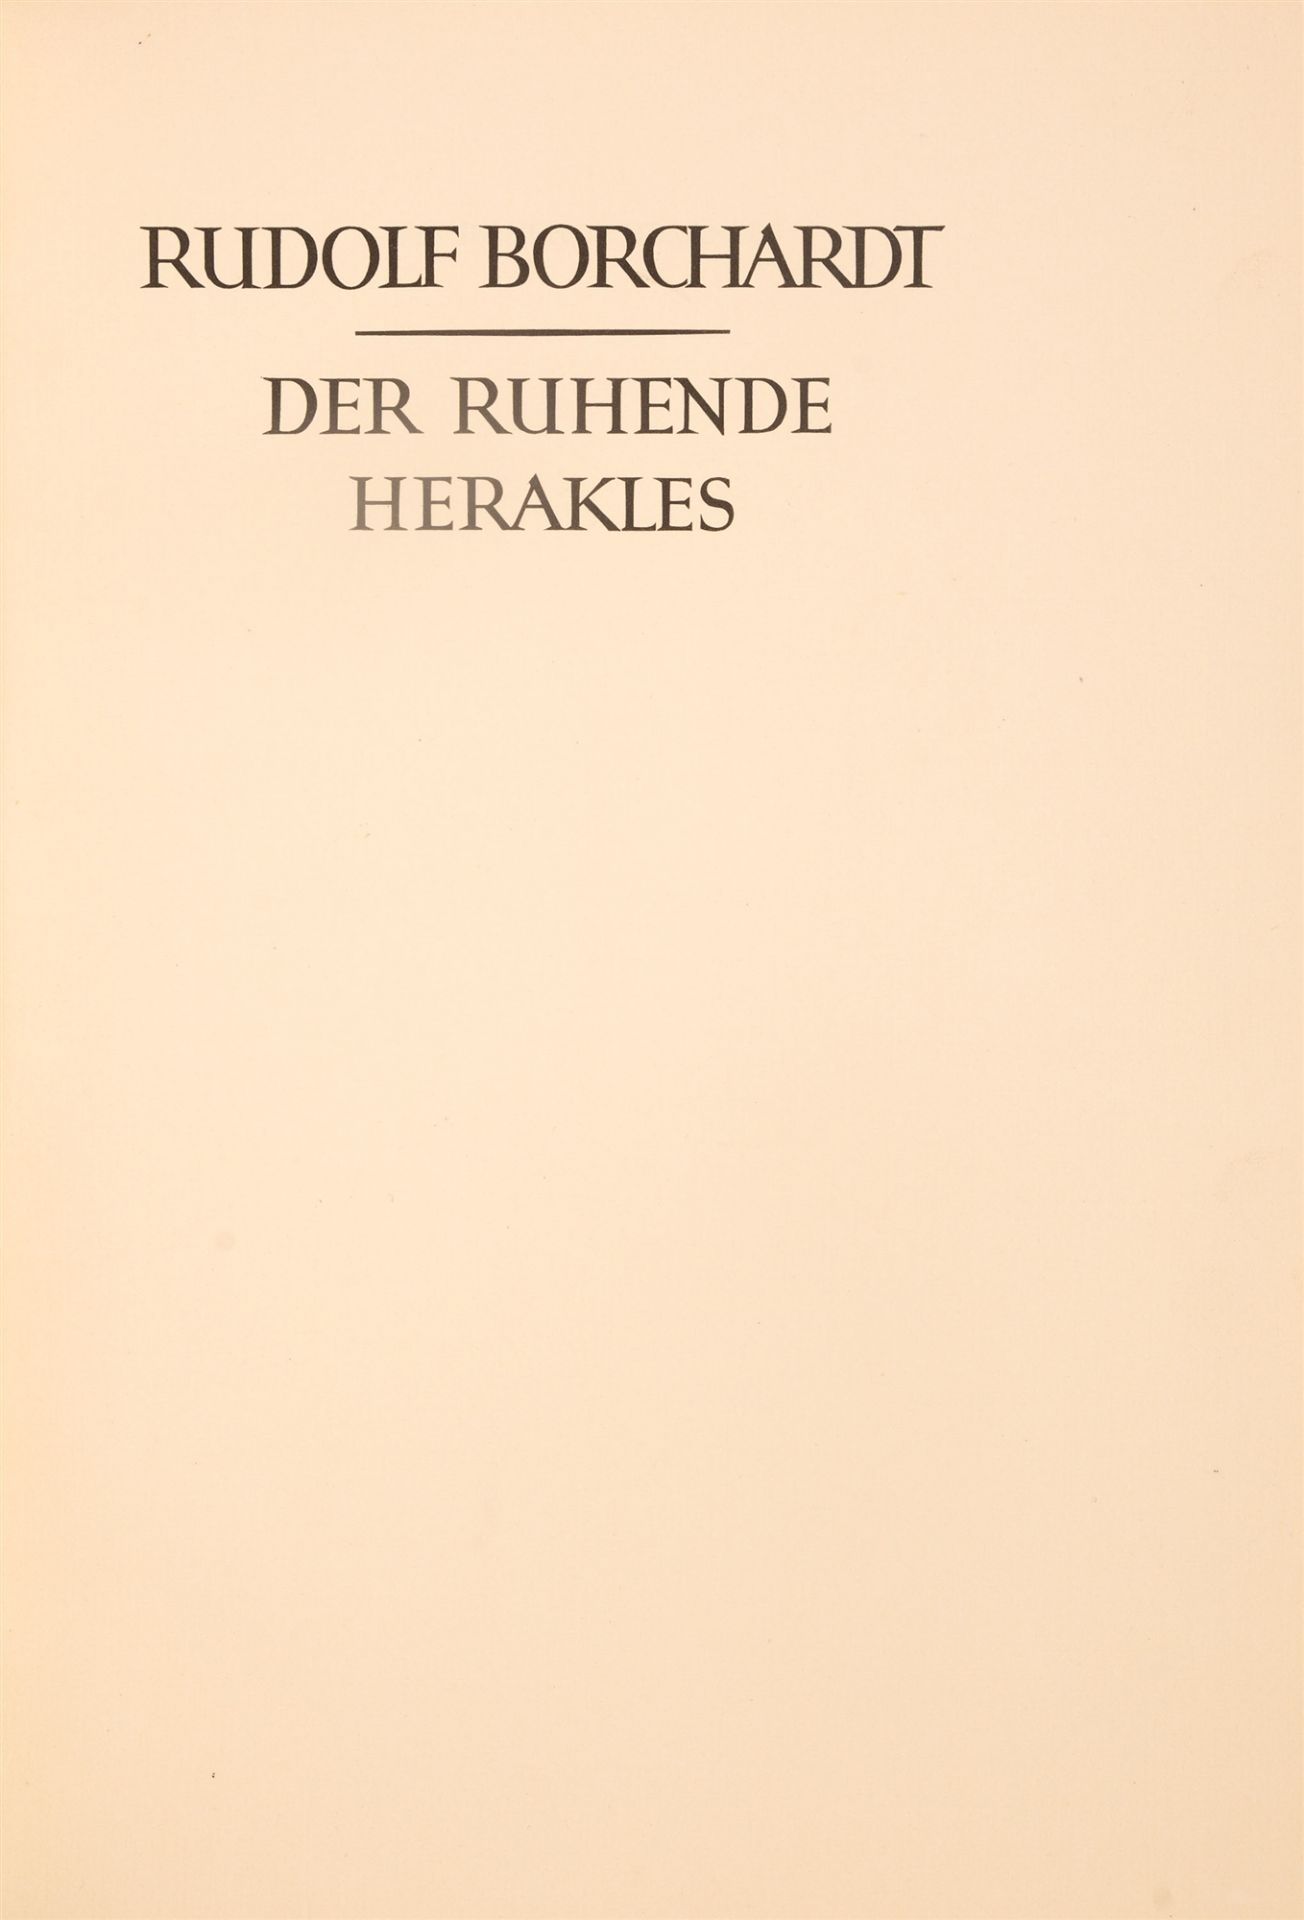 R. Borchardt, Der ruhende Herakles. München 1924. - Image 2 of 2